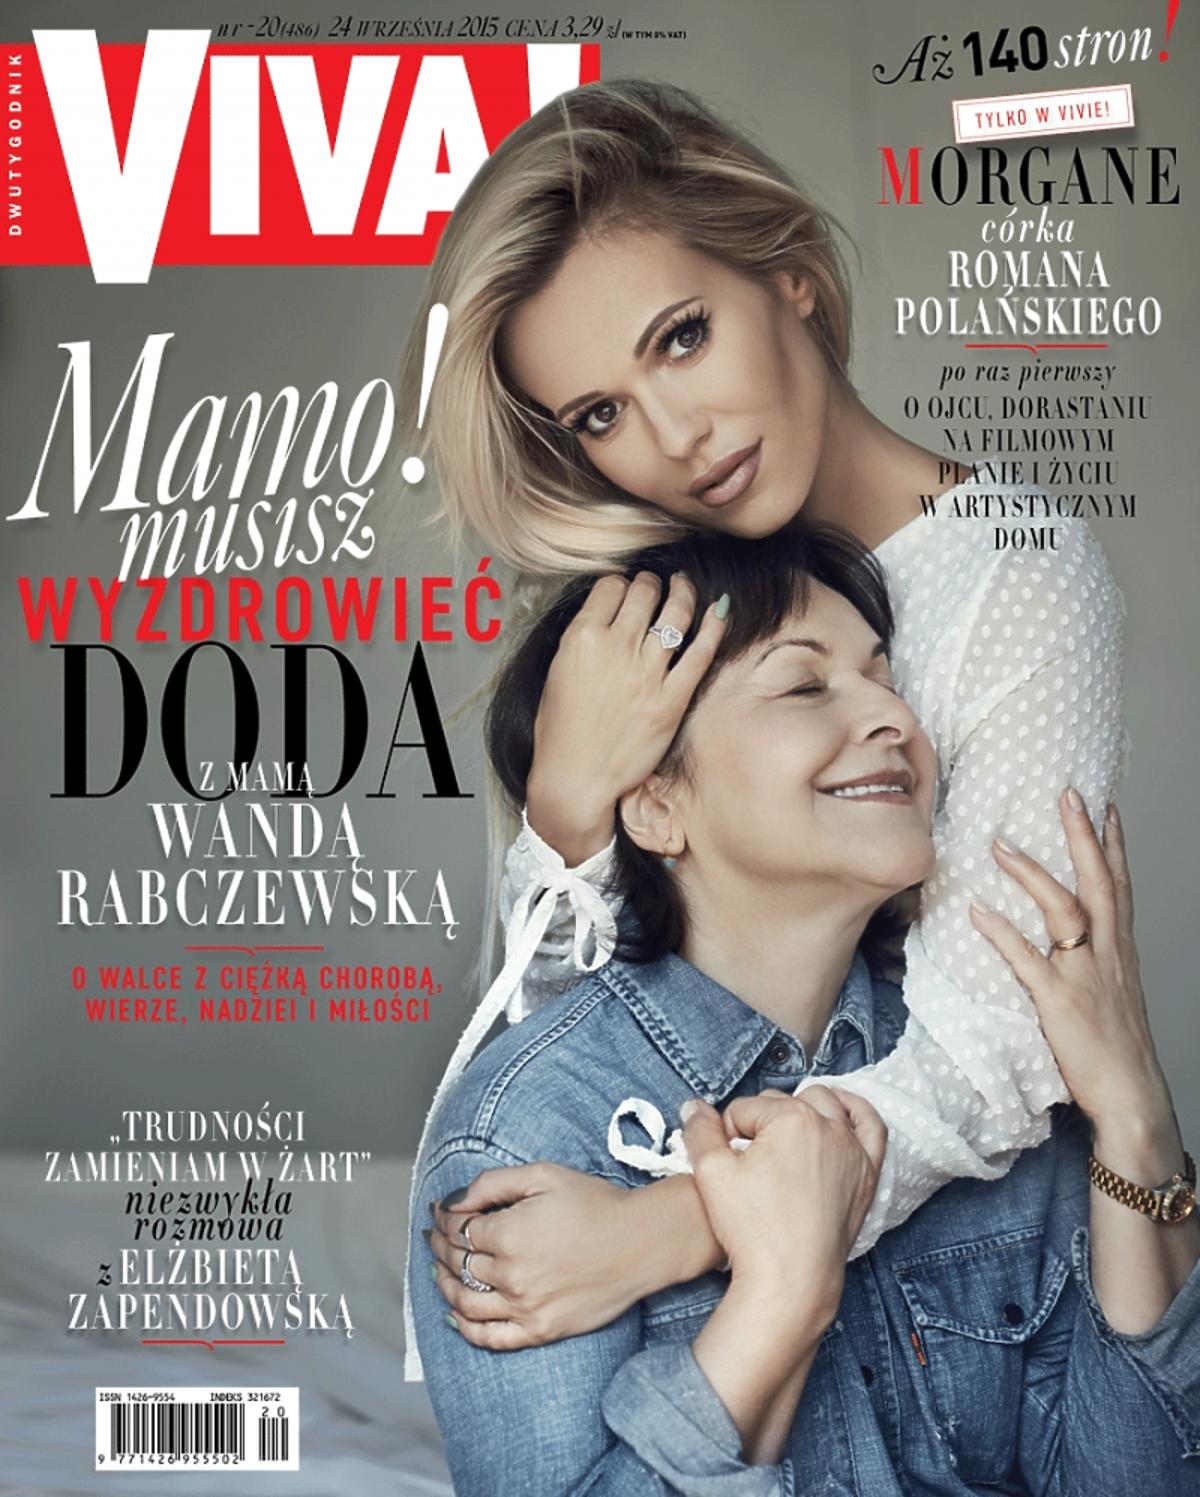 Dorota i Wanda Rabczewskie, Viva! wrzesień 2015